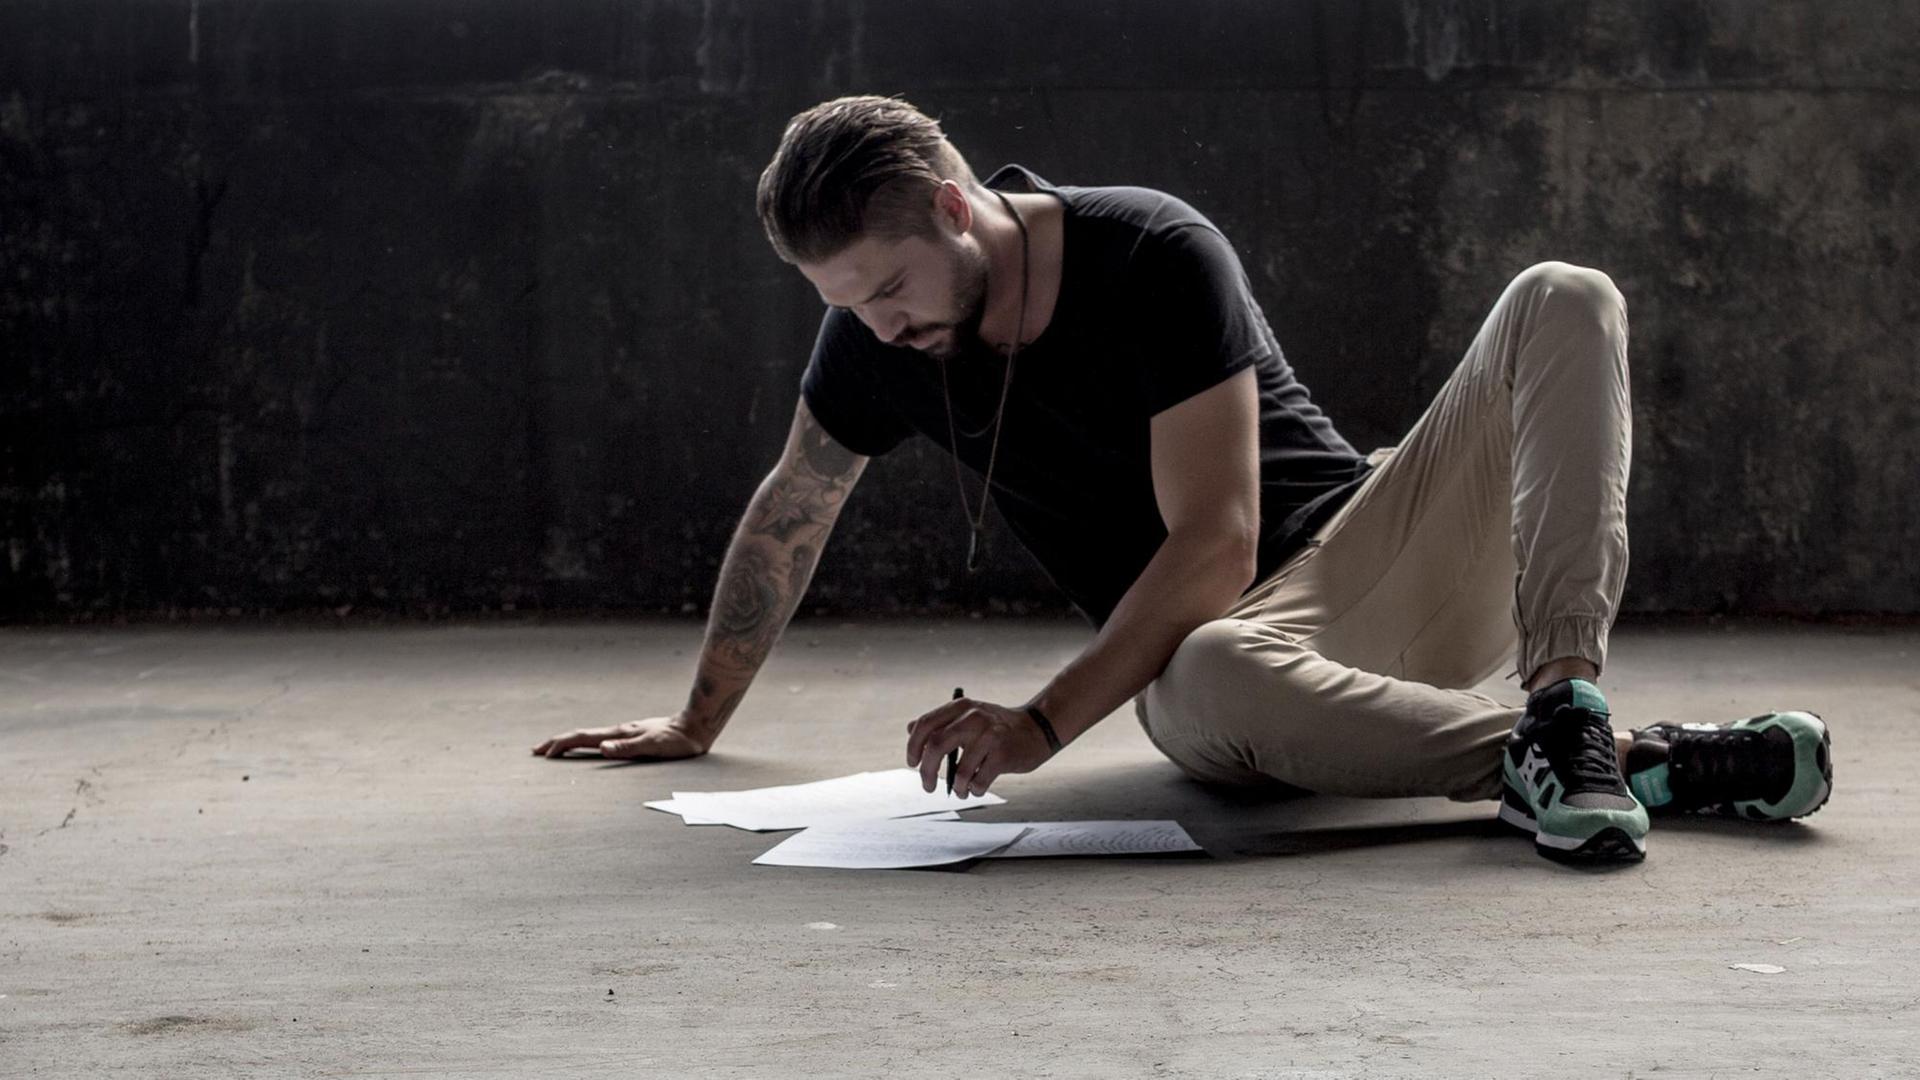 Ein Mann sitzt auf einem Betonboden und schreibt auf einigen Blättern, die er vor sich ausgebreitet hat.